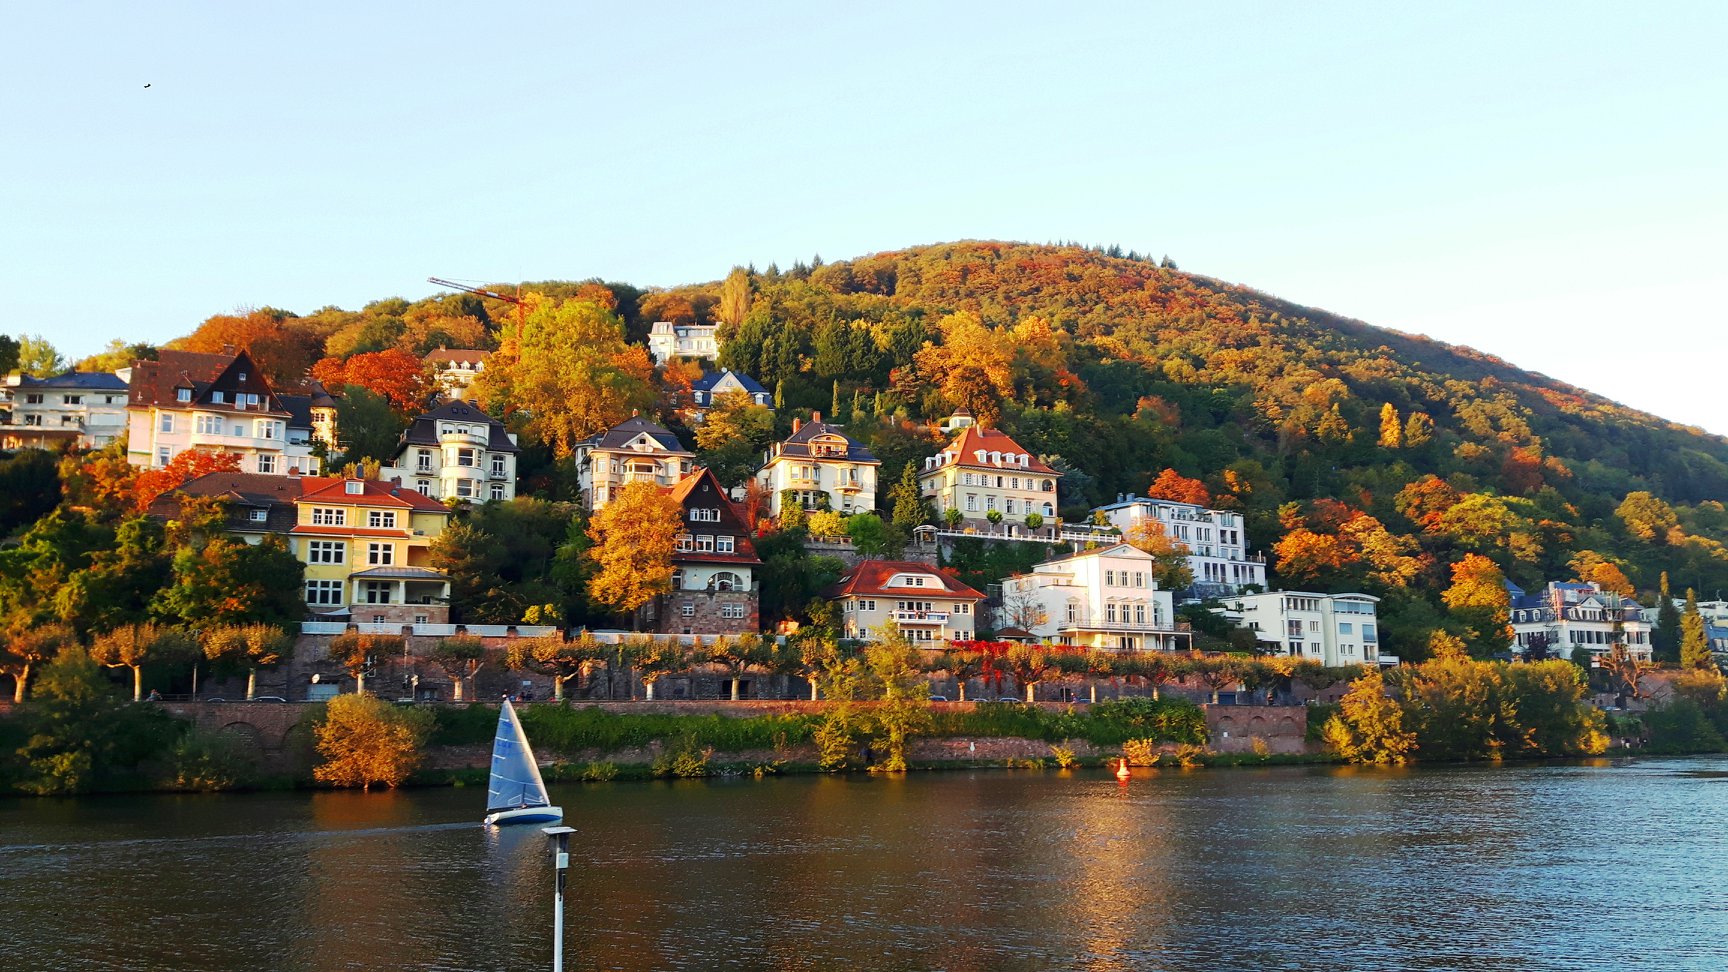 Neckarblick - Neuenhheim, Heidelberg